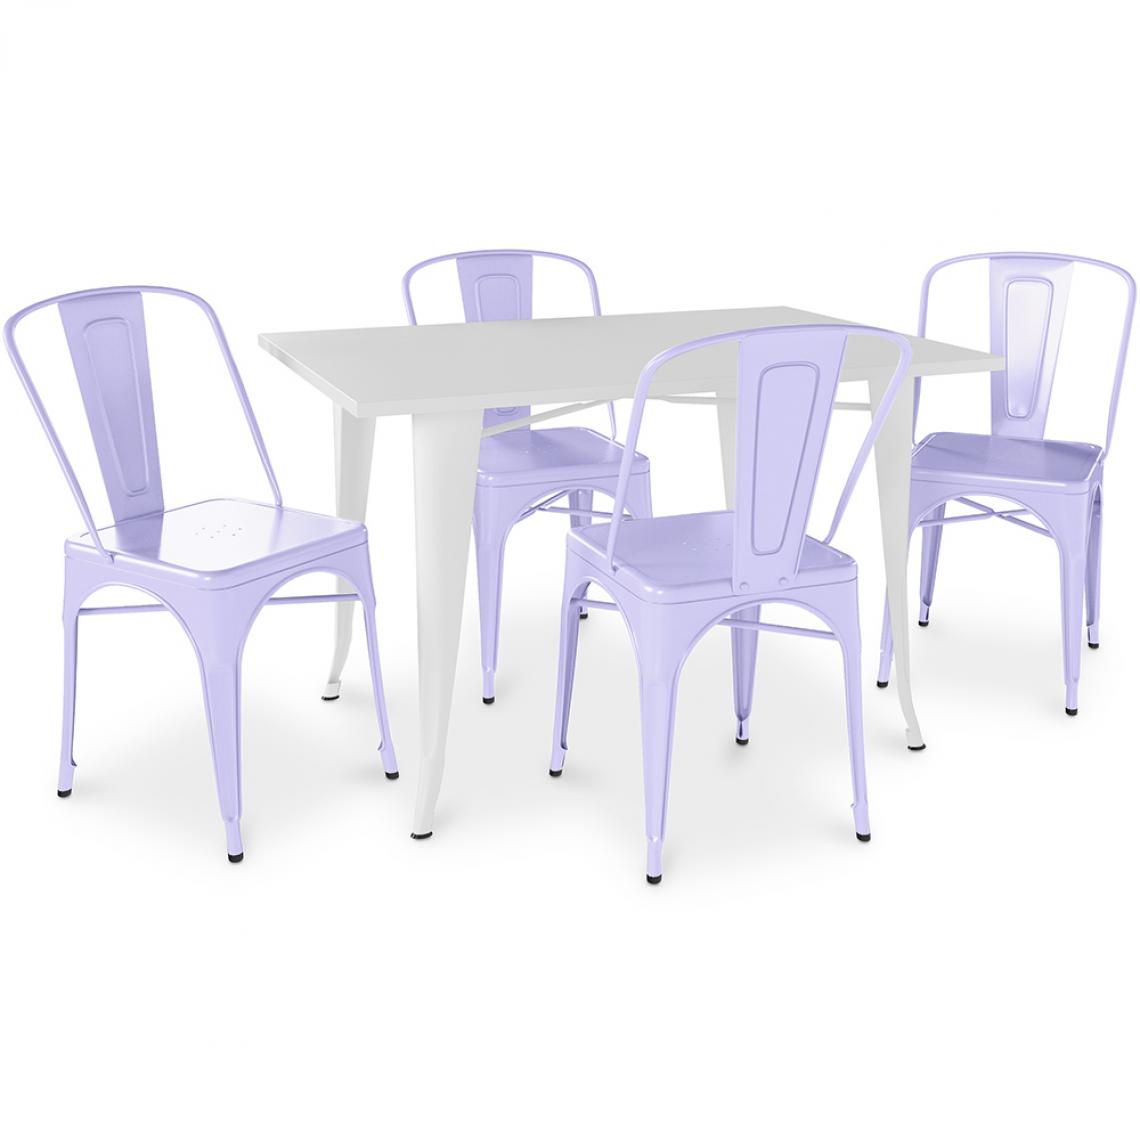 Iconik Interior - Table de salle à manger + 4 chaises de salle à manger Set Bistrot Stylix Design Industriel Métal - Nouvelle Edition Lavande - Chaises